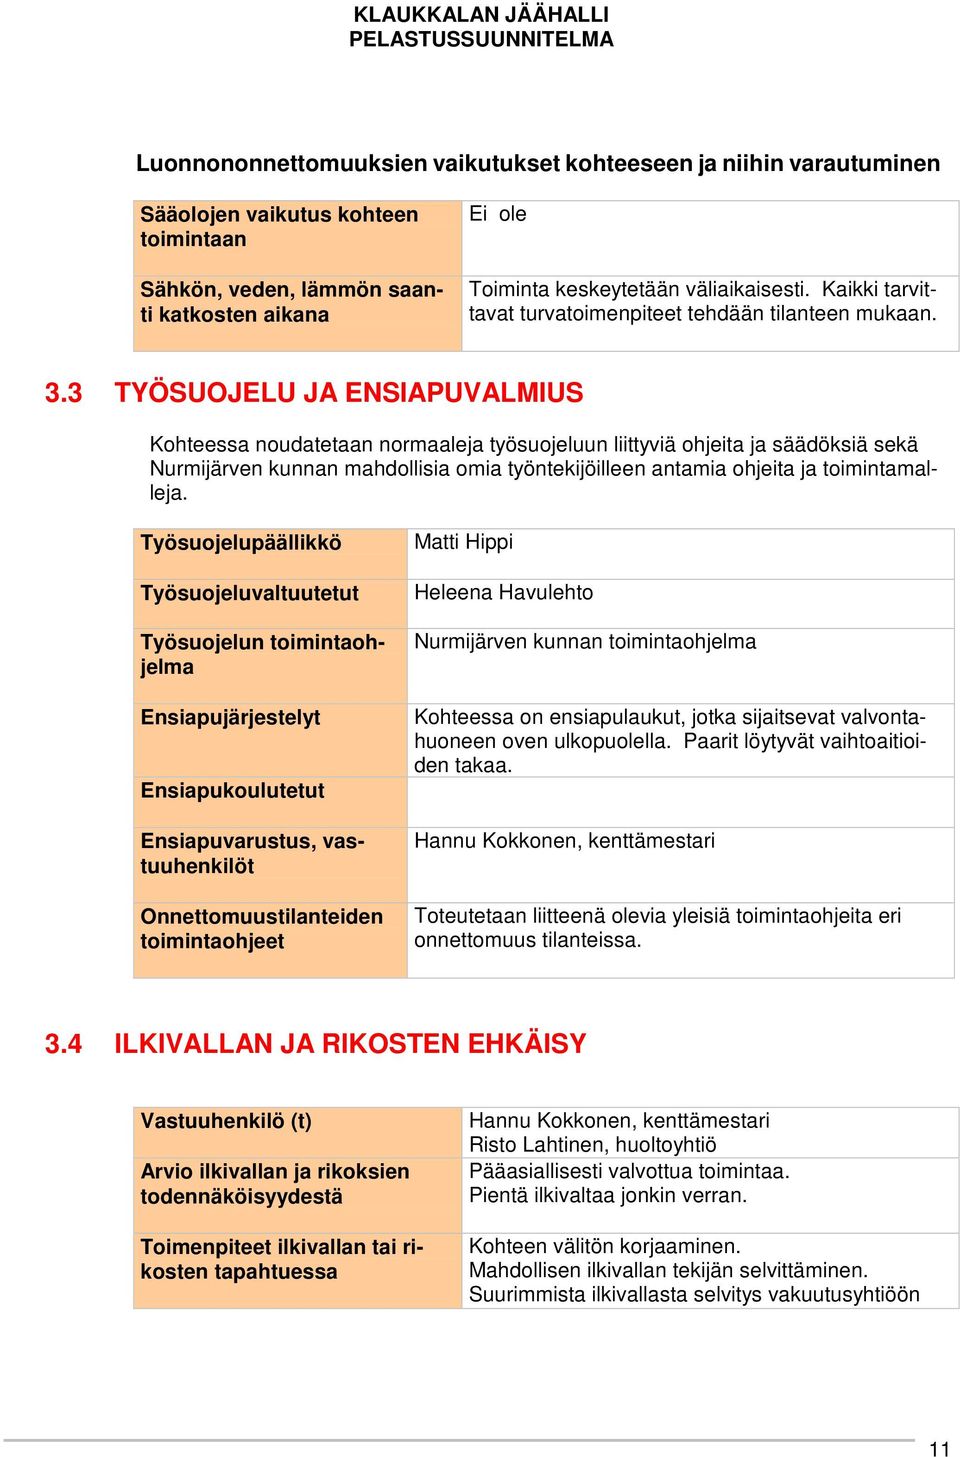 3 TYÖSUOJELU JA ENSIAPUVALMIUS Kohteessa noudatetaan normaaleja työsuojeluun liittyviä ohjeita ja säädöksiä sekä Nurmijärven kunnan mahdollisia omia työntekijöilleen antamia ohjeita ja